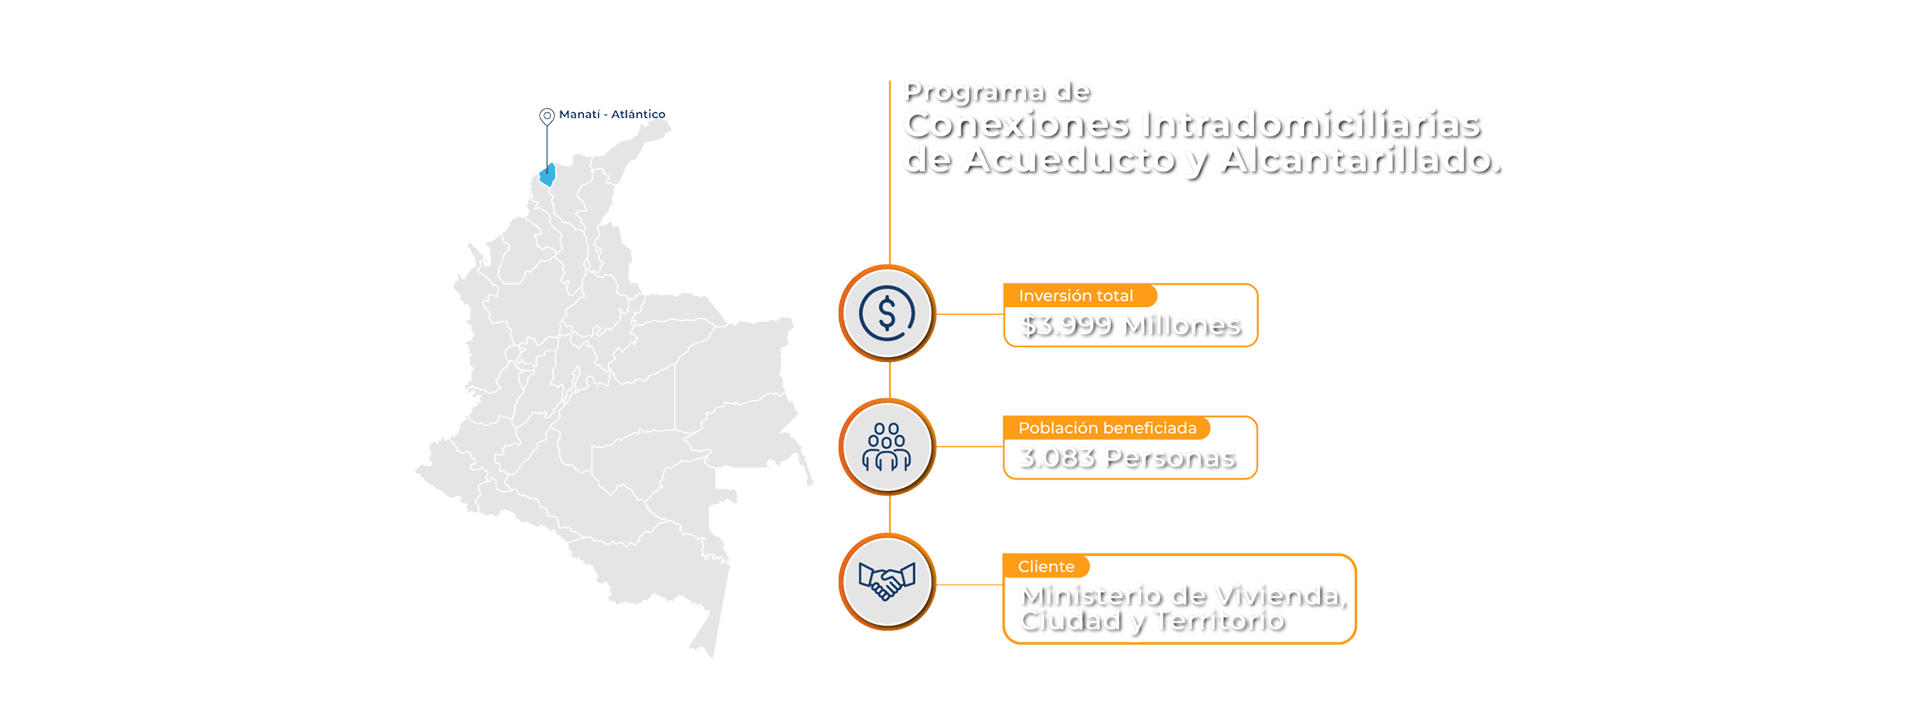 Datos del proyecto Conexiones Intradomiciliarias con MinVivienda: Inversión total $3.900 Millones, Beneficiados: 3.083 personas.